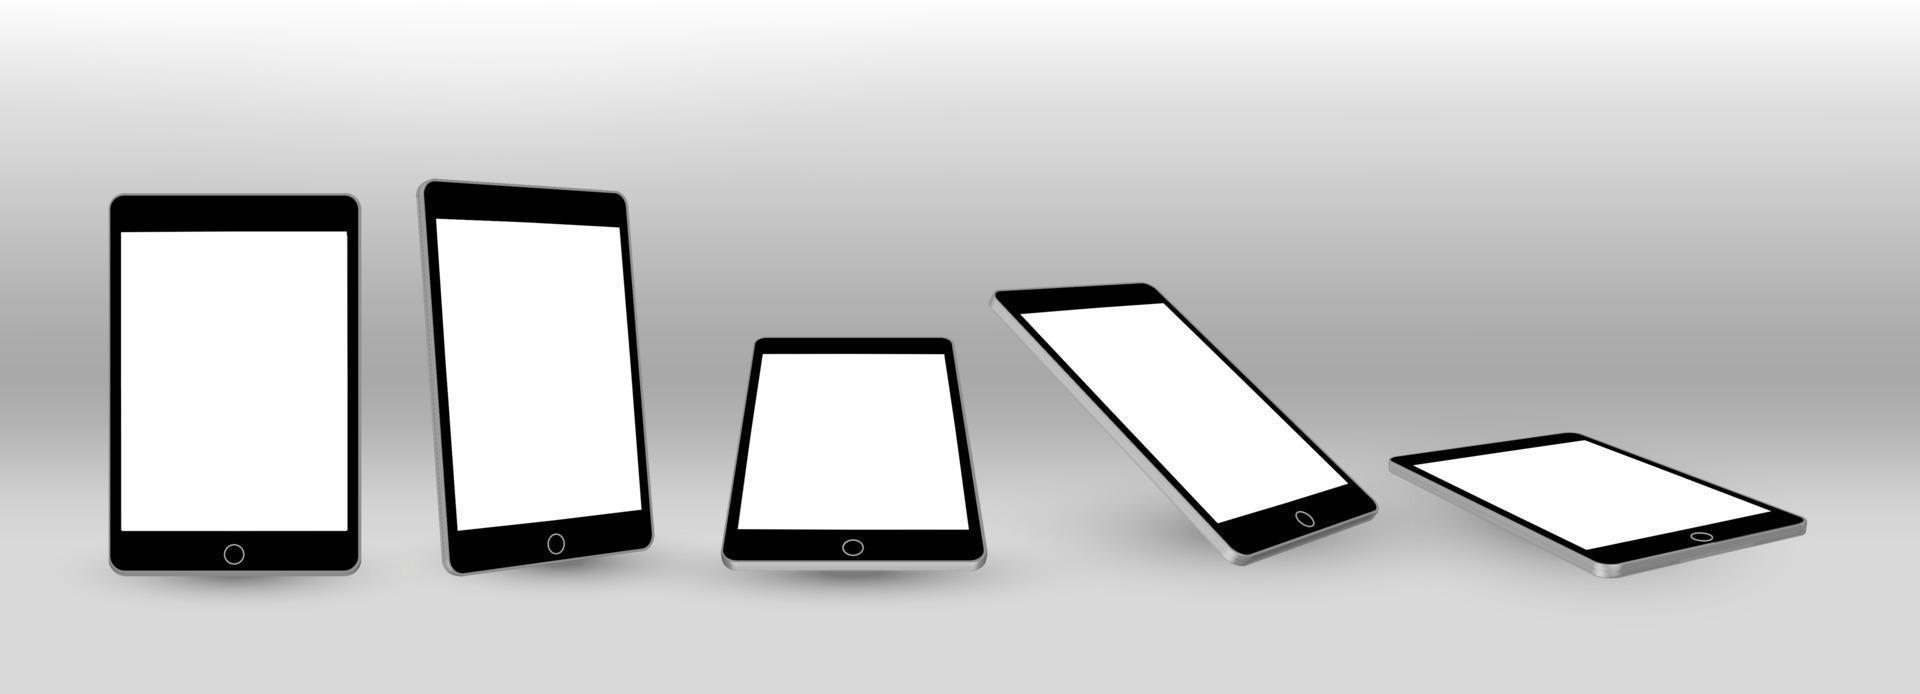 tablet pc 3d maquette réaliste.tablet pc frame avec des modèles d'affichage vierges vecteur